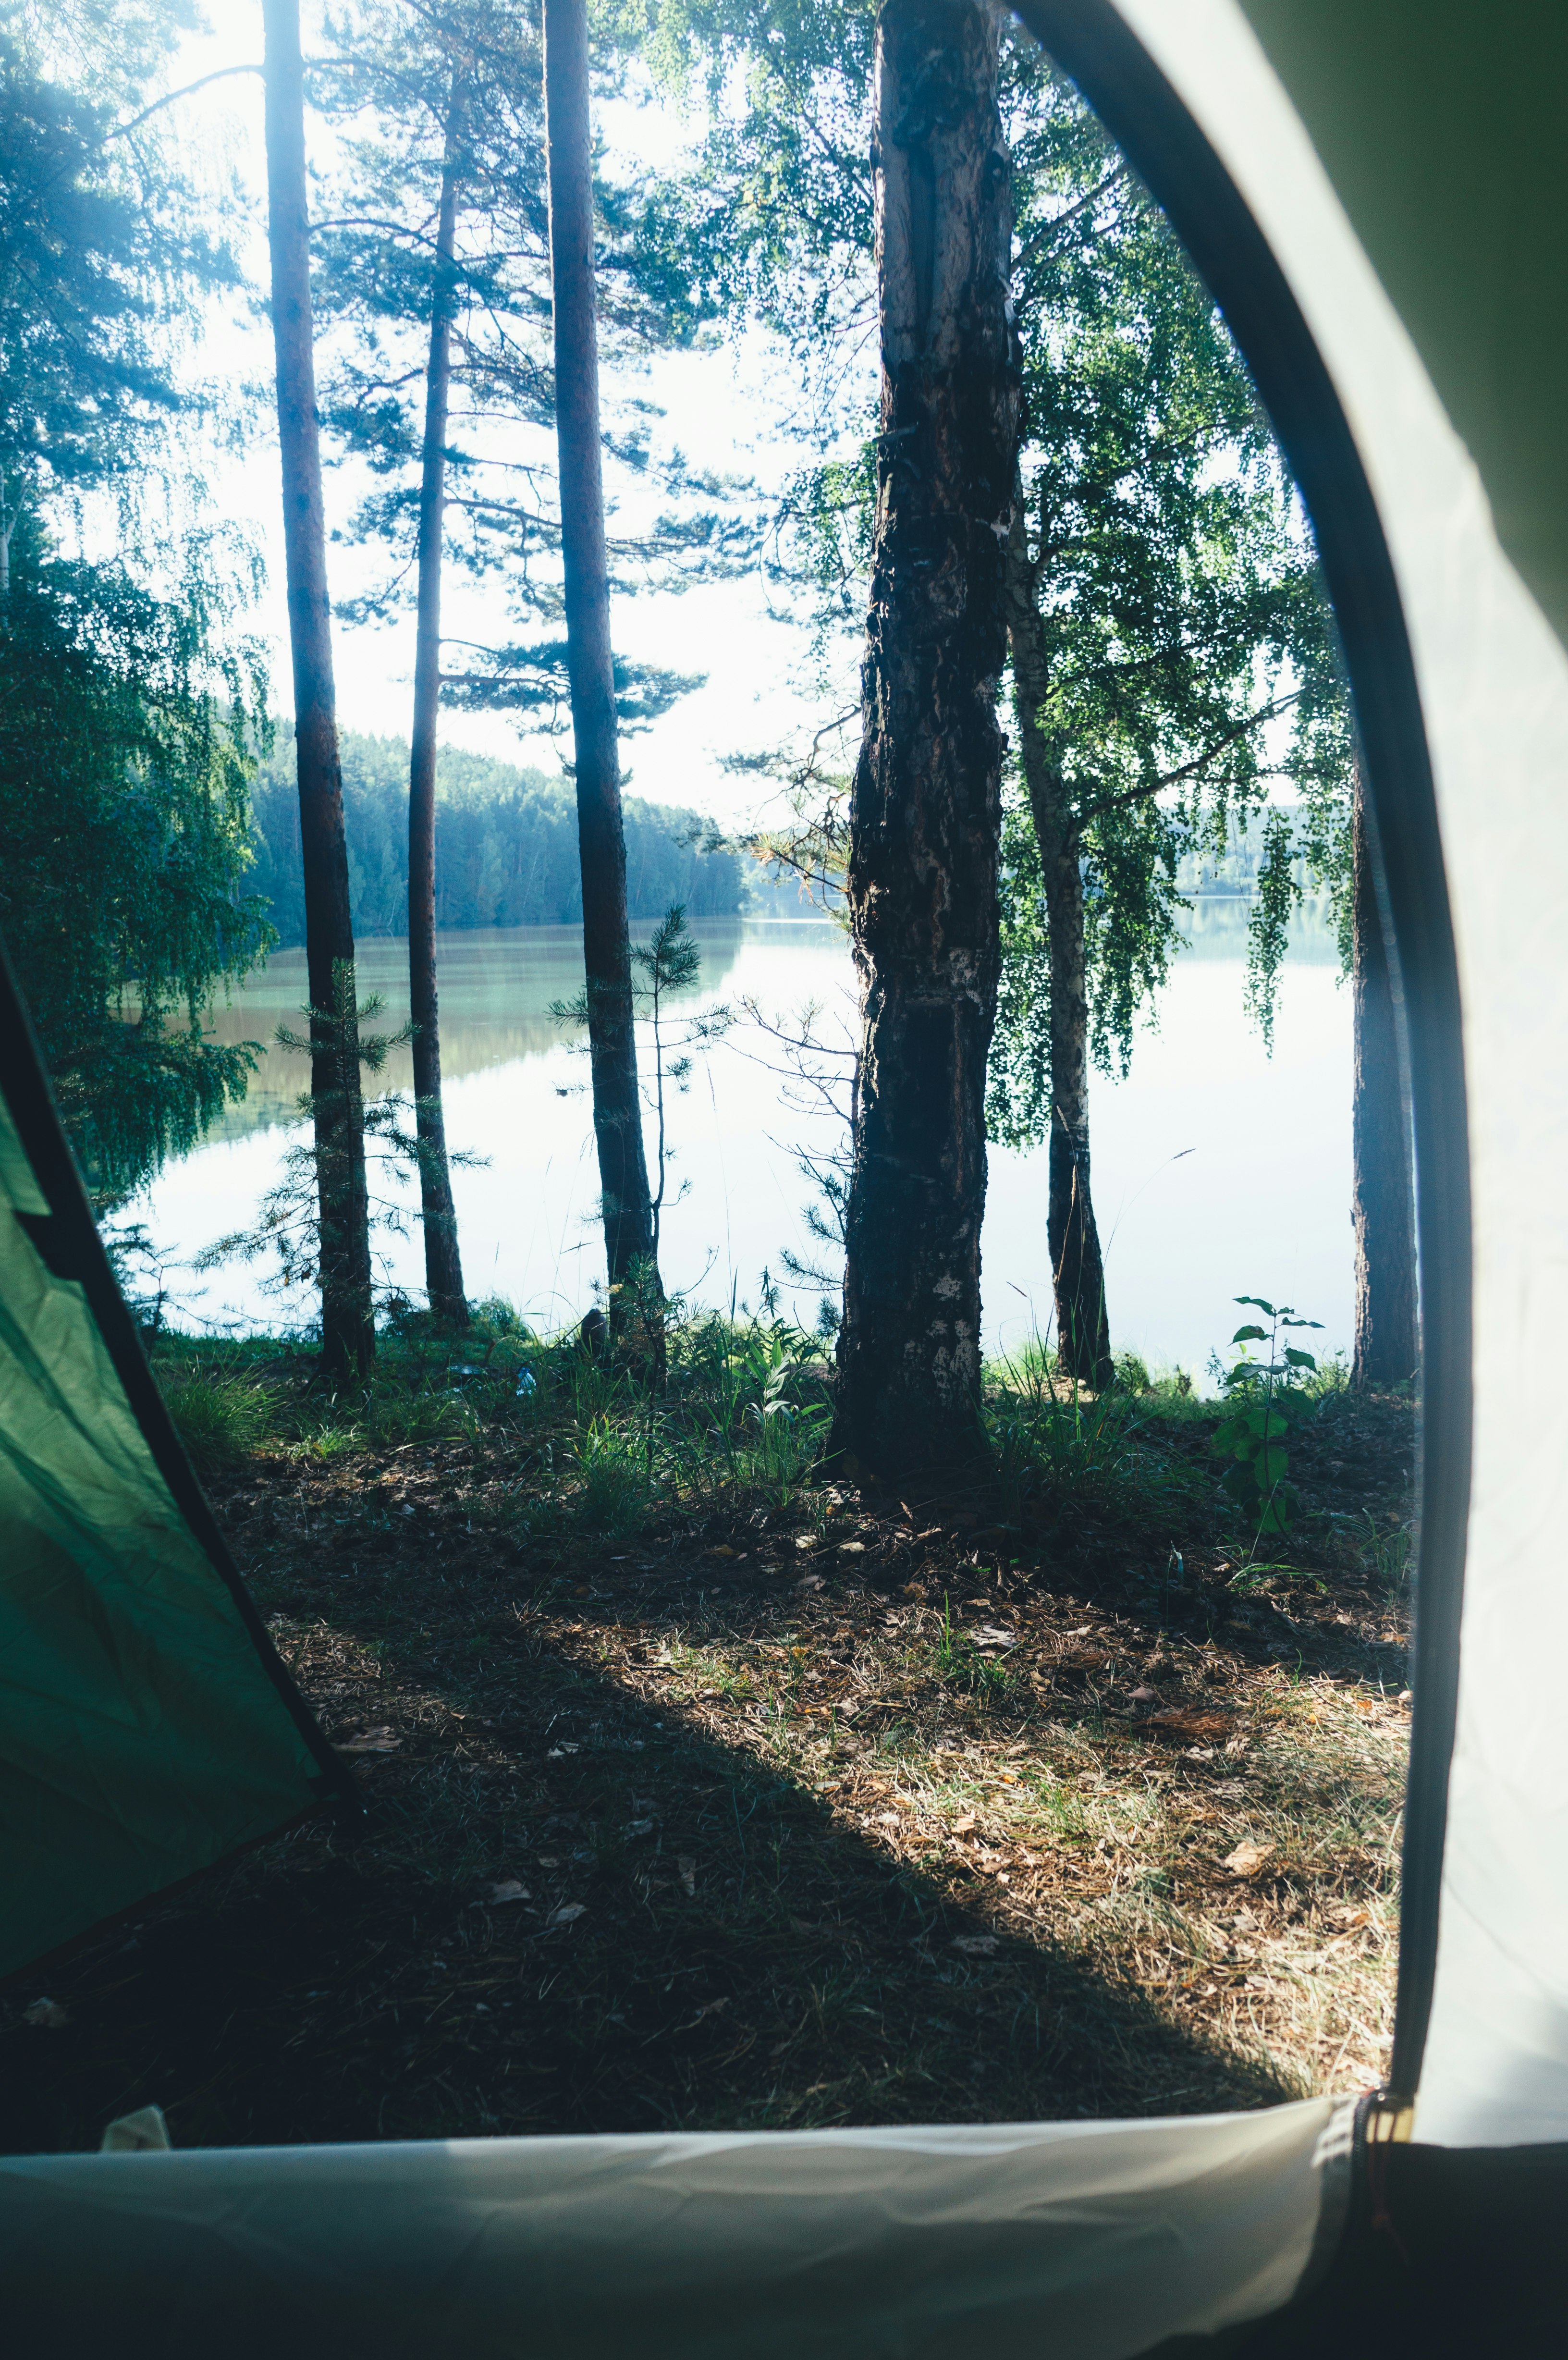 green tent near lake during daytime